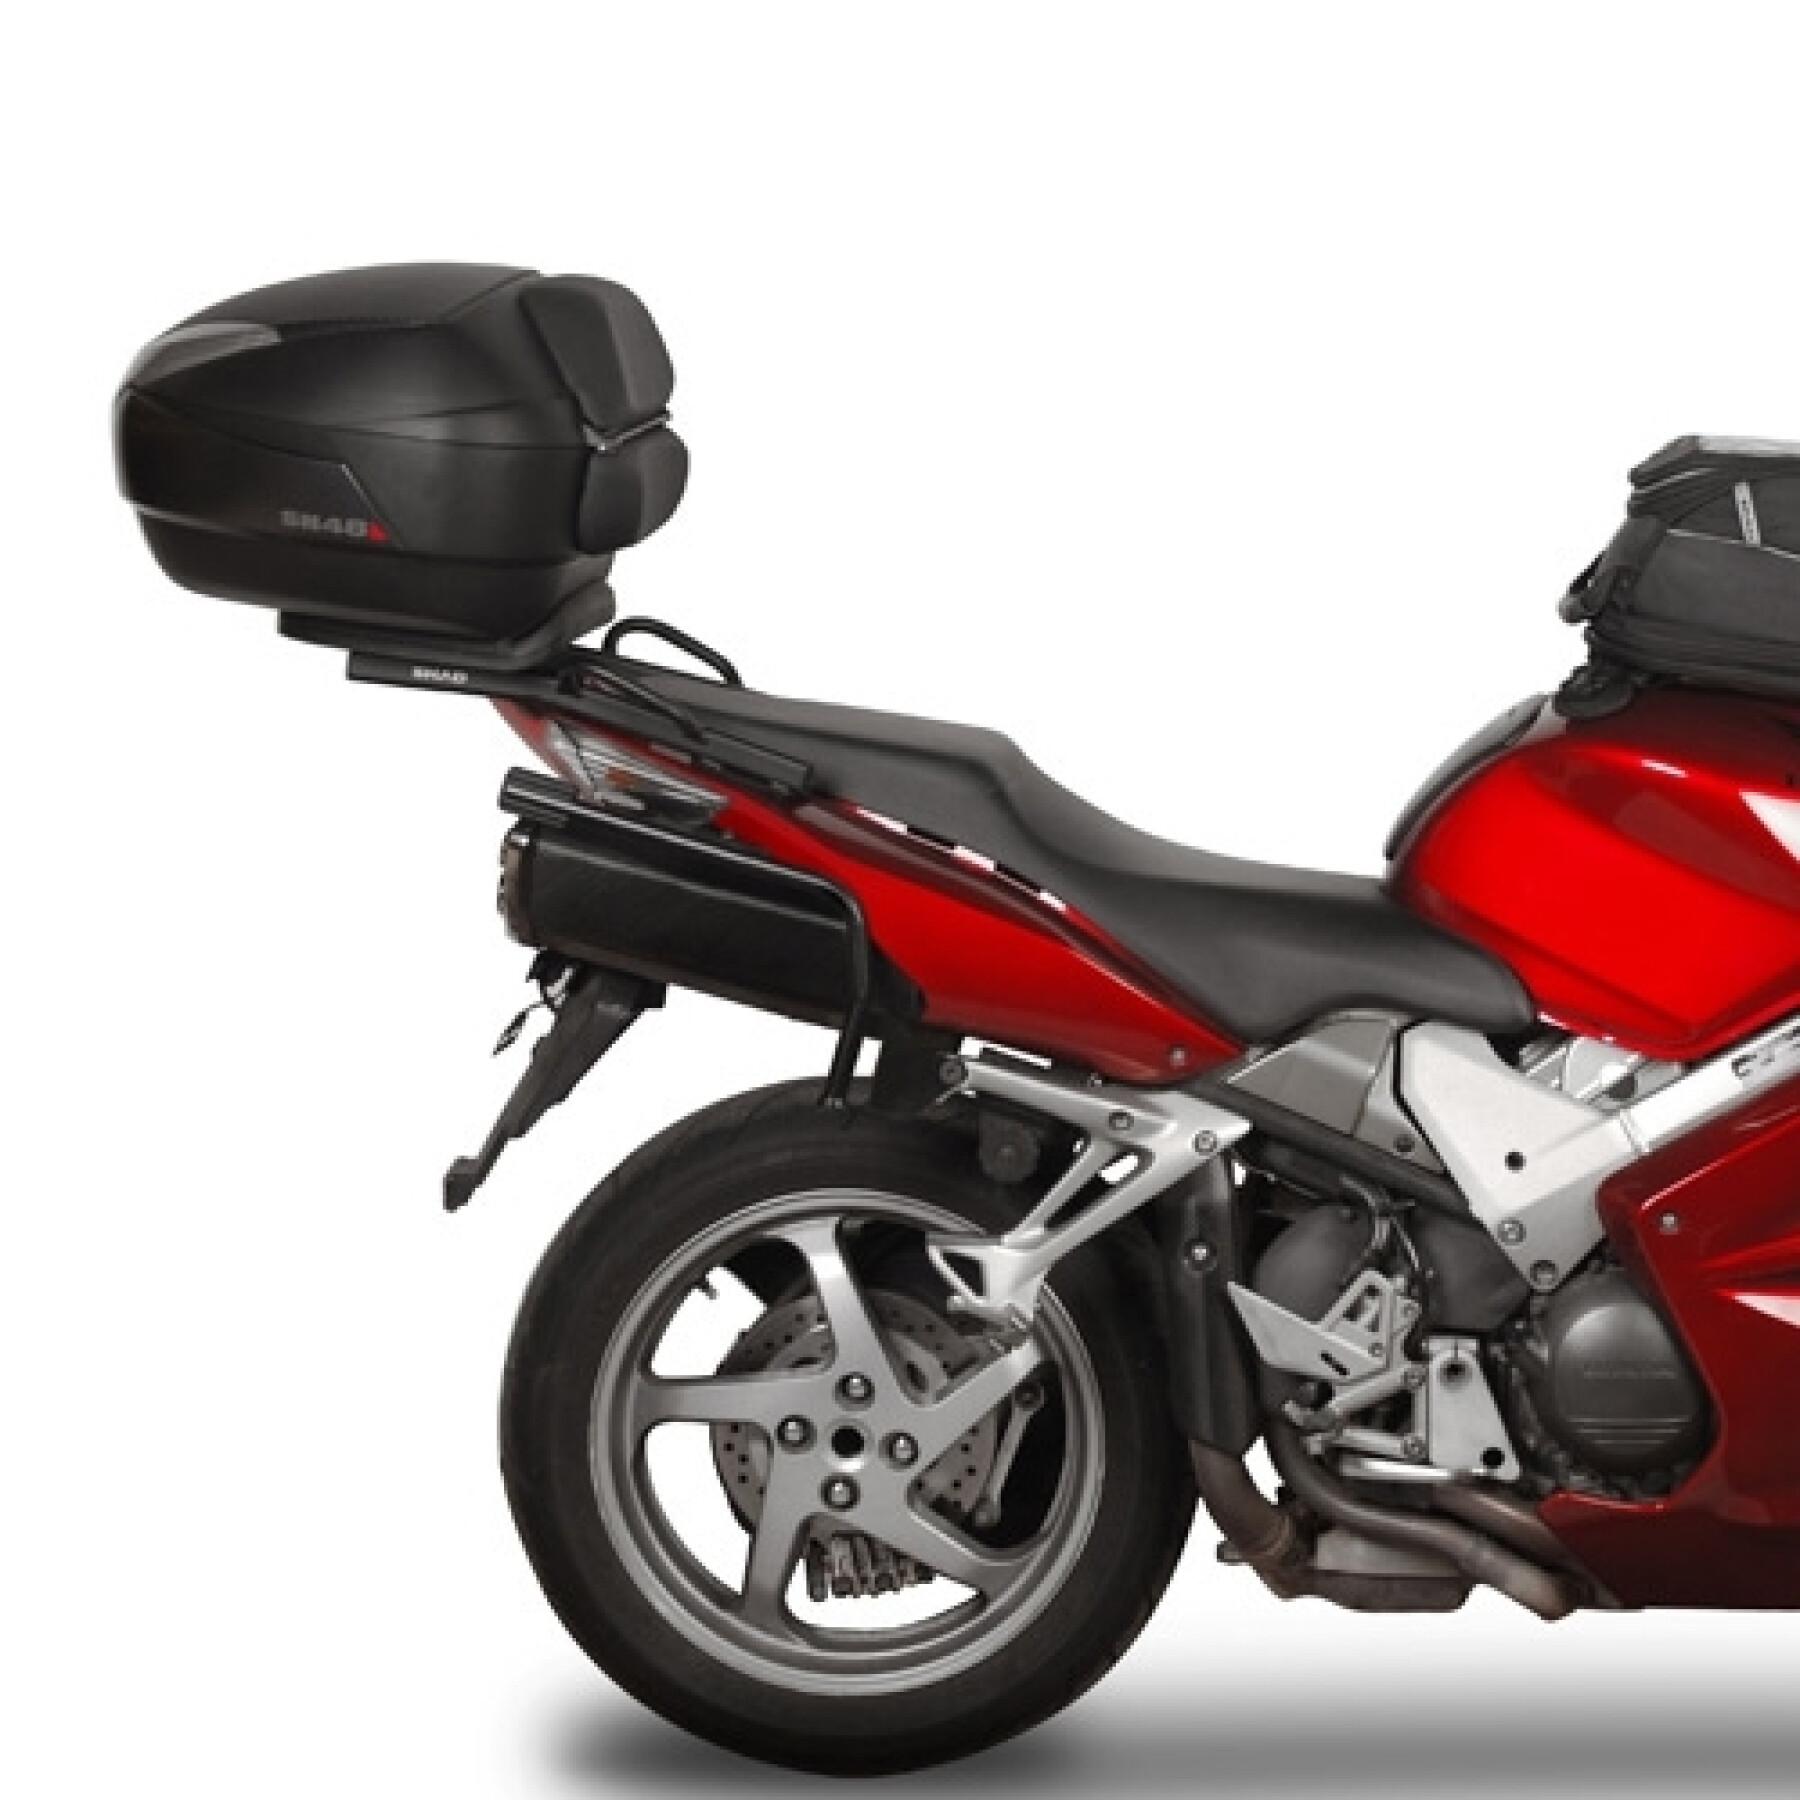 Wspornik obudowy motocykla Shad 3P System Honda Vfr 800 (05 TO 13)/ 800 Vtec (02 TO 04)